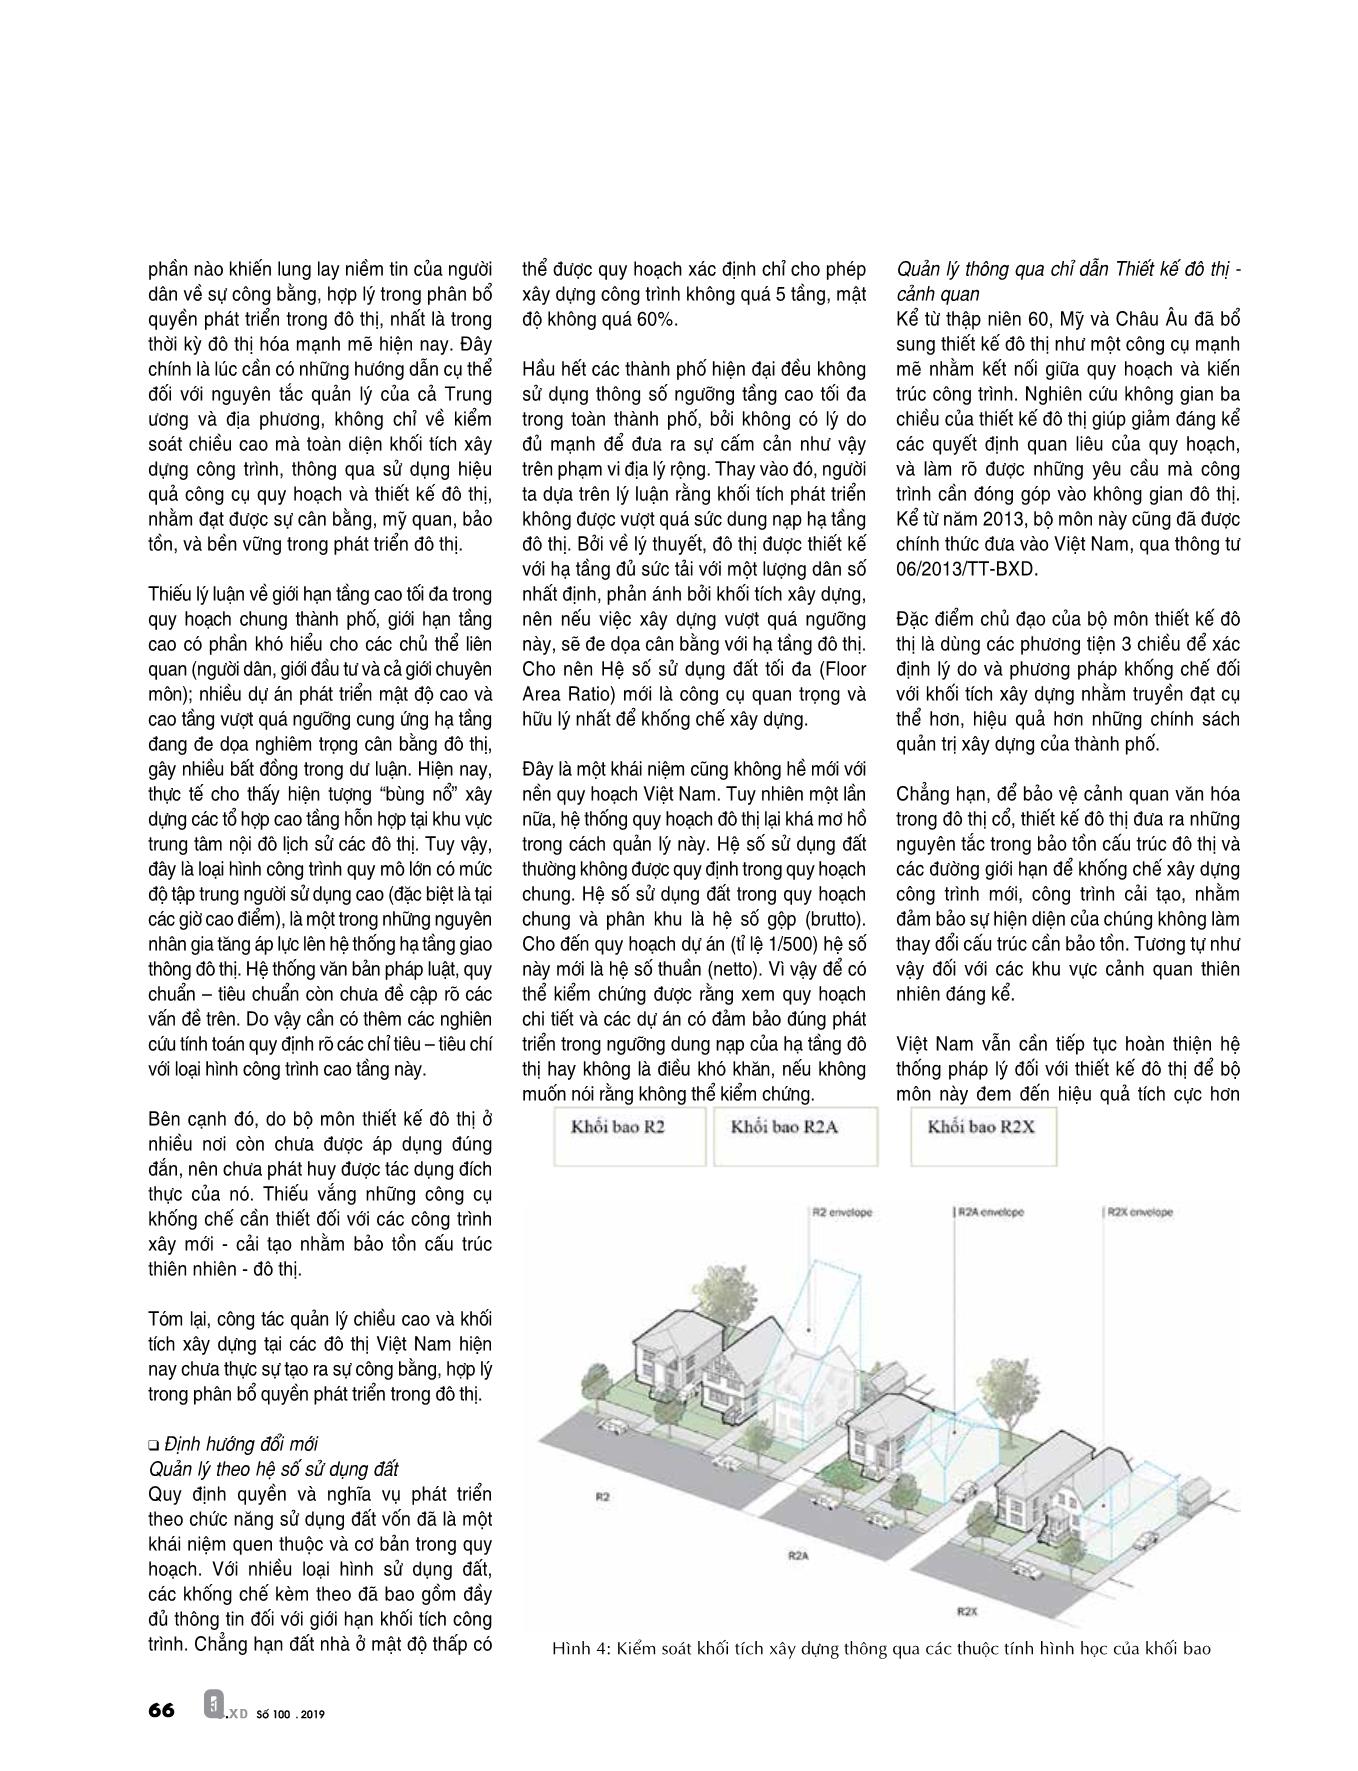 Đổi mới phương pháp luận quy hoạch và quản lý phát triển đô thị: Từ thực tiễn đến yêu cầu đổi mới (Phần 2) trang 3